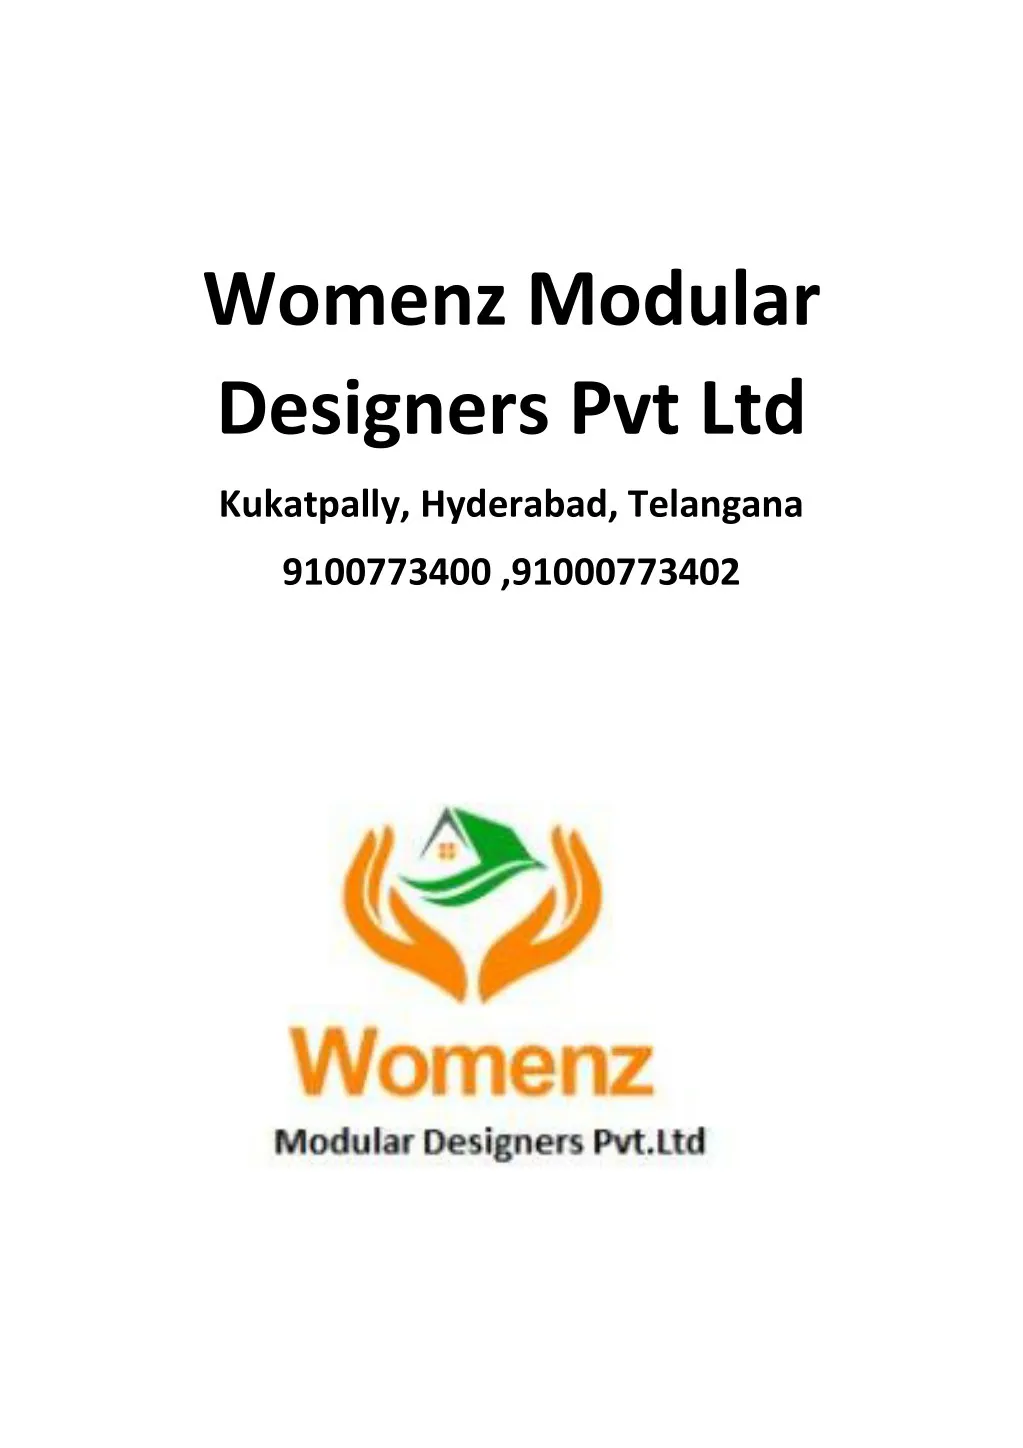 womenz modular designers pvt ltd